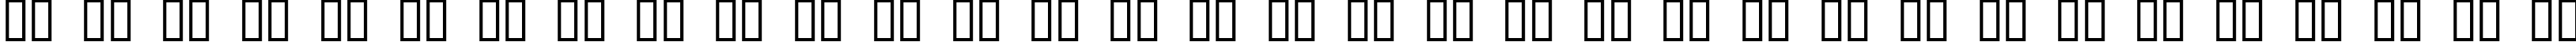 Пример написания русского алфавита шрифтом Crop Circle Dingbats